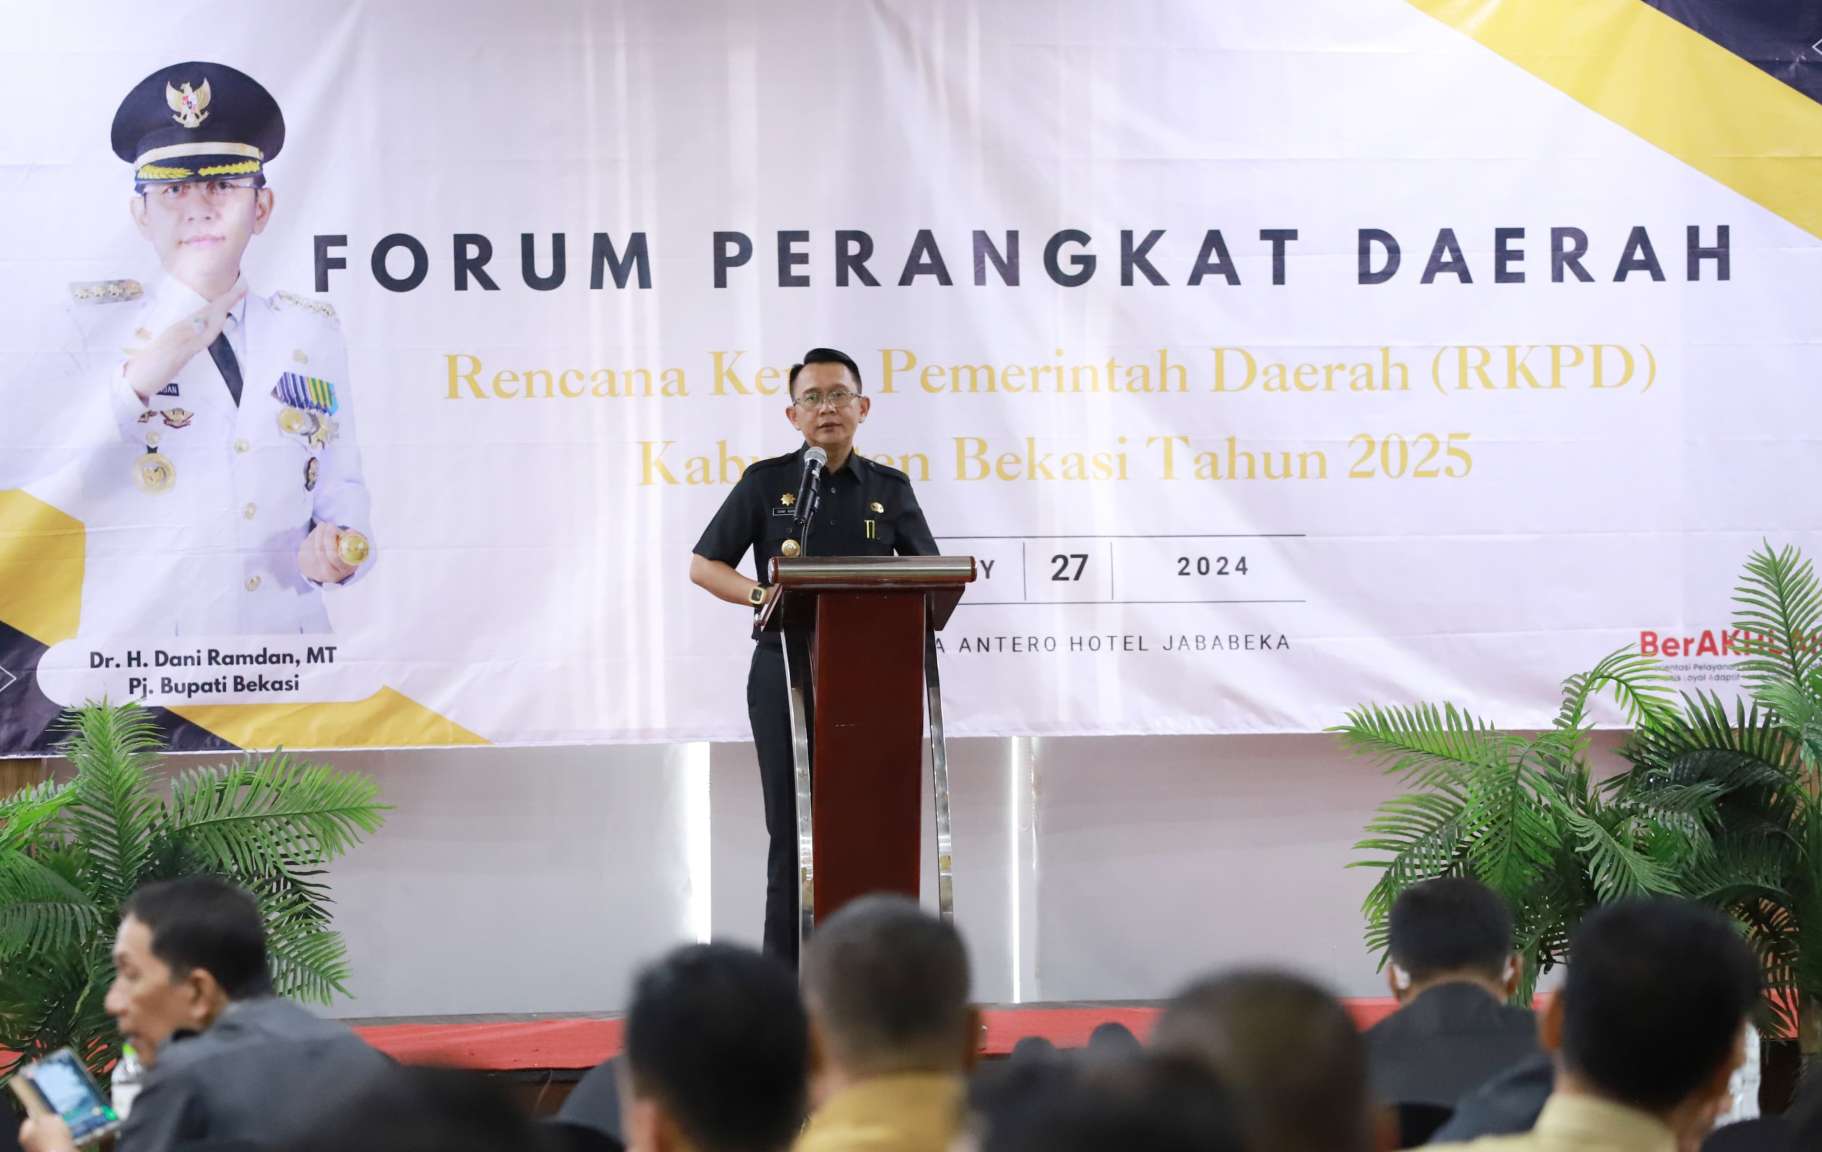 Forum Perangkat Daerah RKPD 2025 Pemkab Bekasi Lanjutkan Program Penurunan Stunting, Miskin Ekstrem dan Pengangguran